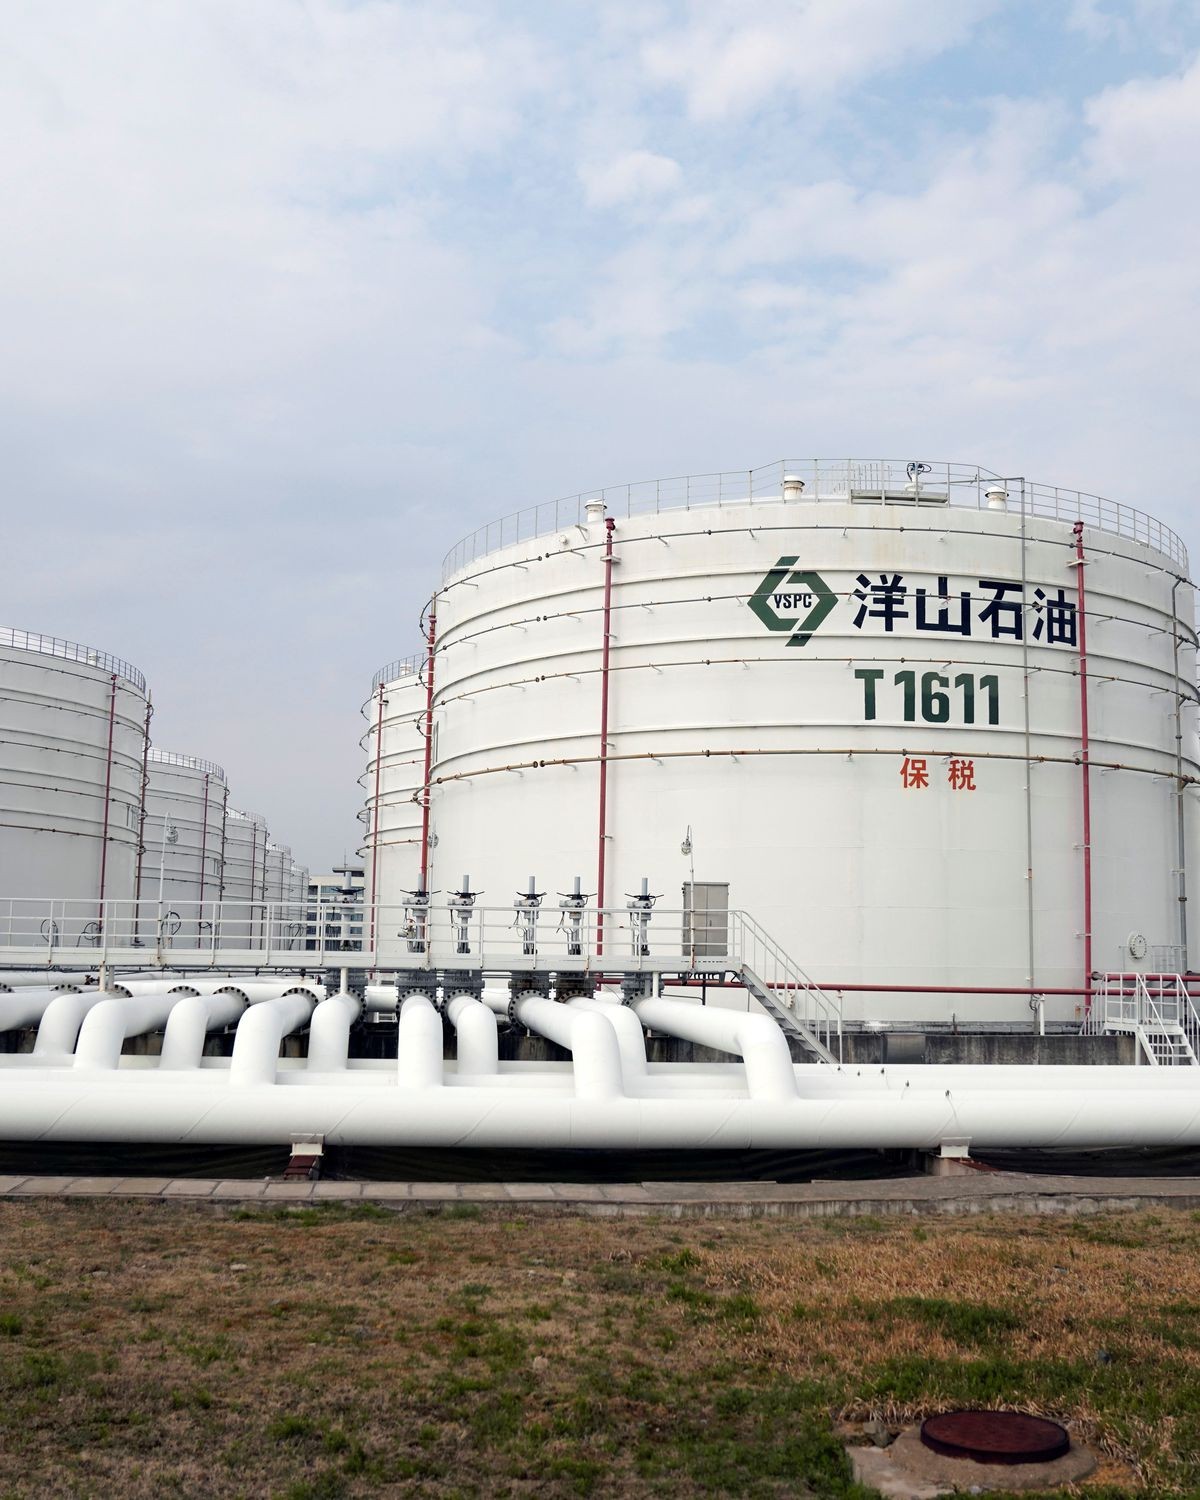 Saudi Arabia tiếp tục là nhà cung cấp dầu thô số một của Trung Quốc